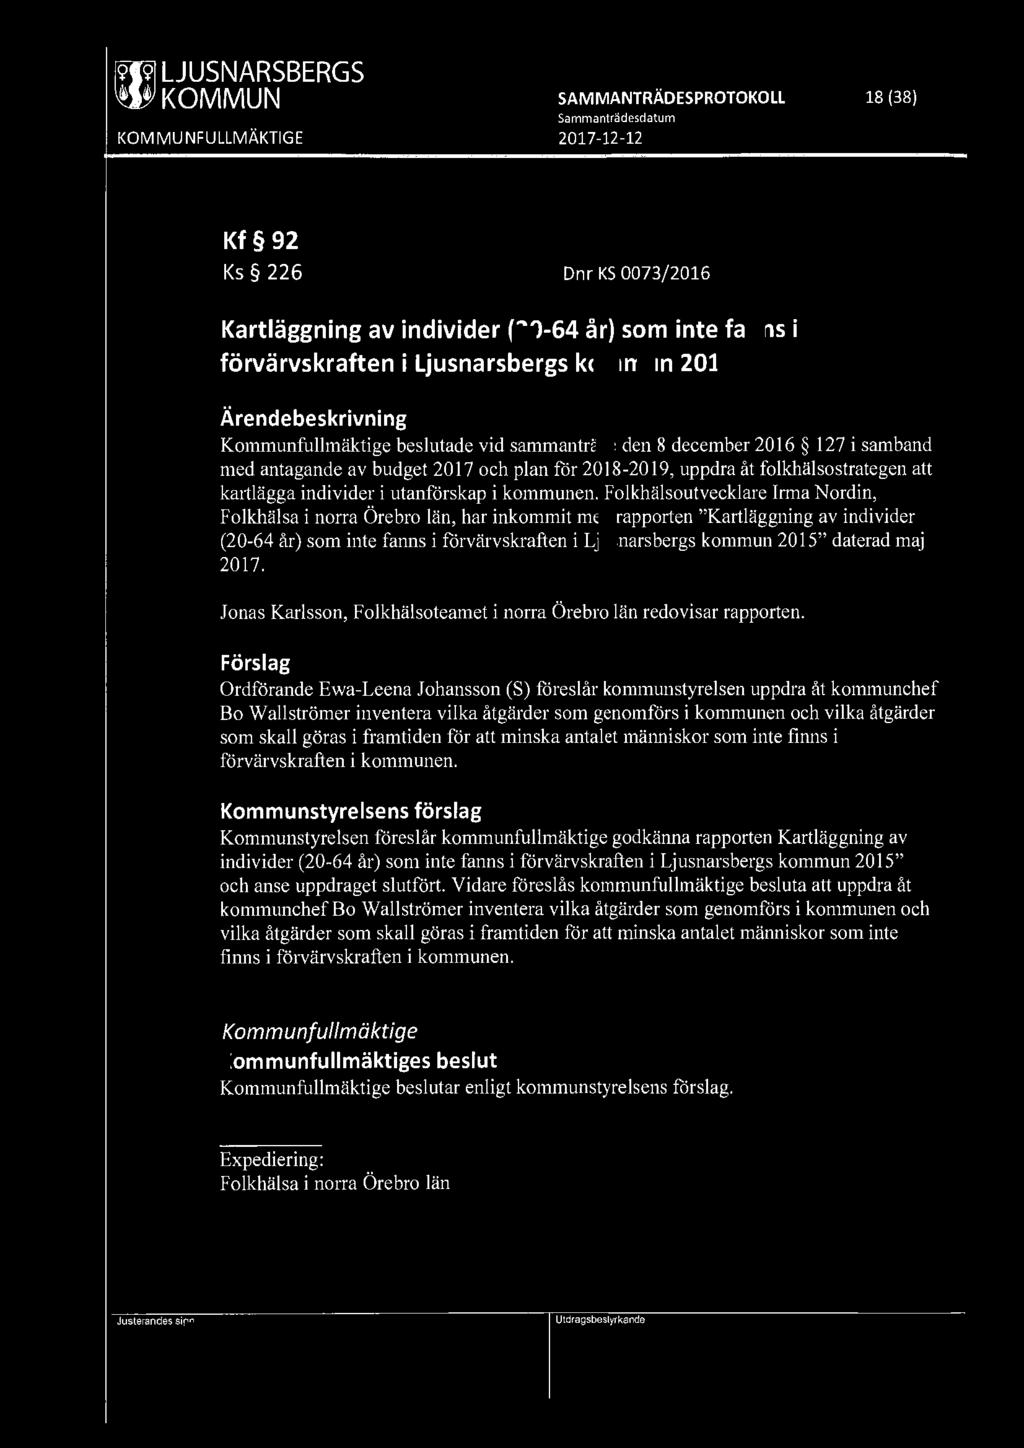 ~ KOMMUN SAMMANTRÄDESPROTOKOLL 18 (38) Kf 92 Ks 226 Dnr KS 0073/2016 Kartläggning av individer (20-64 år) som inte fanns i förvärvskraften i Ljusnarsbergs kommun 2015 Kommunfullmäktige beslutade vid